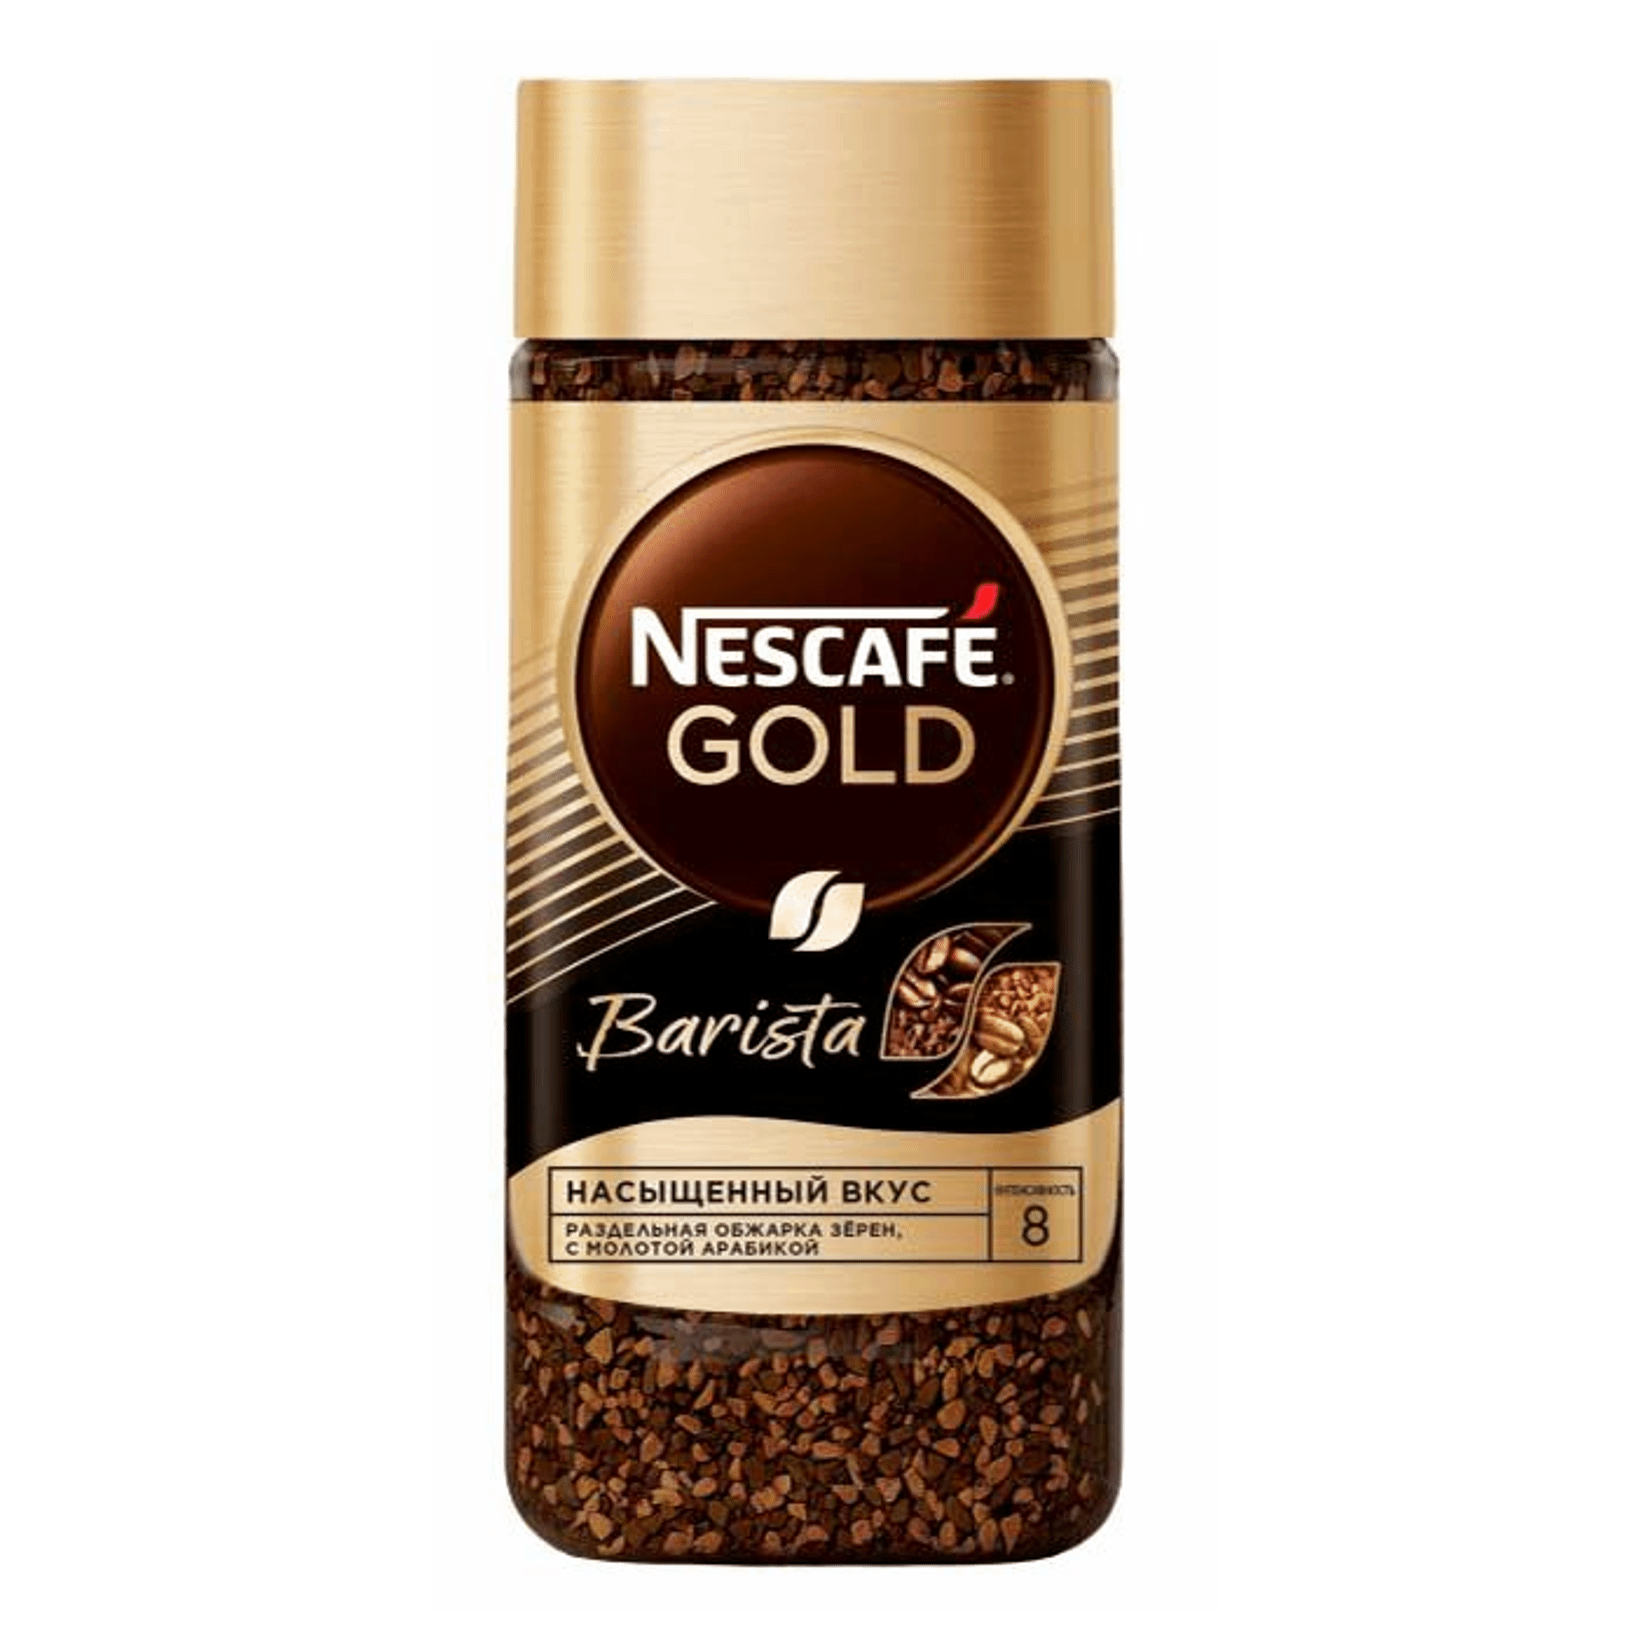 

Кофе Nescafe Gold Barista растворимый с добавлением молотого 170 г